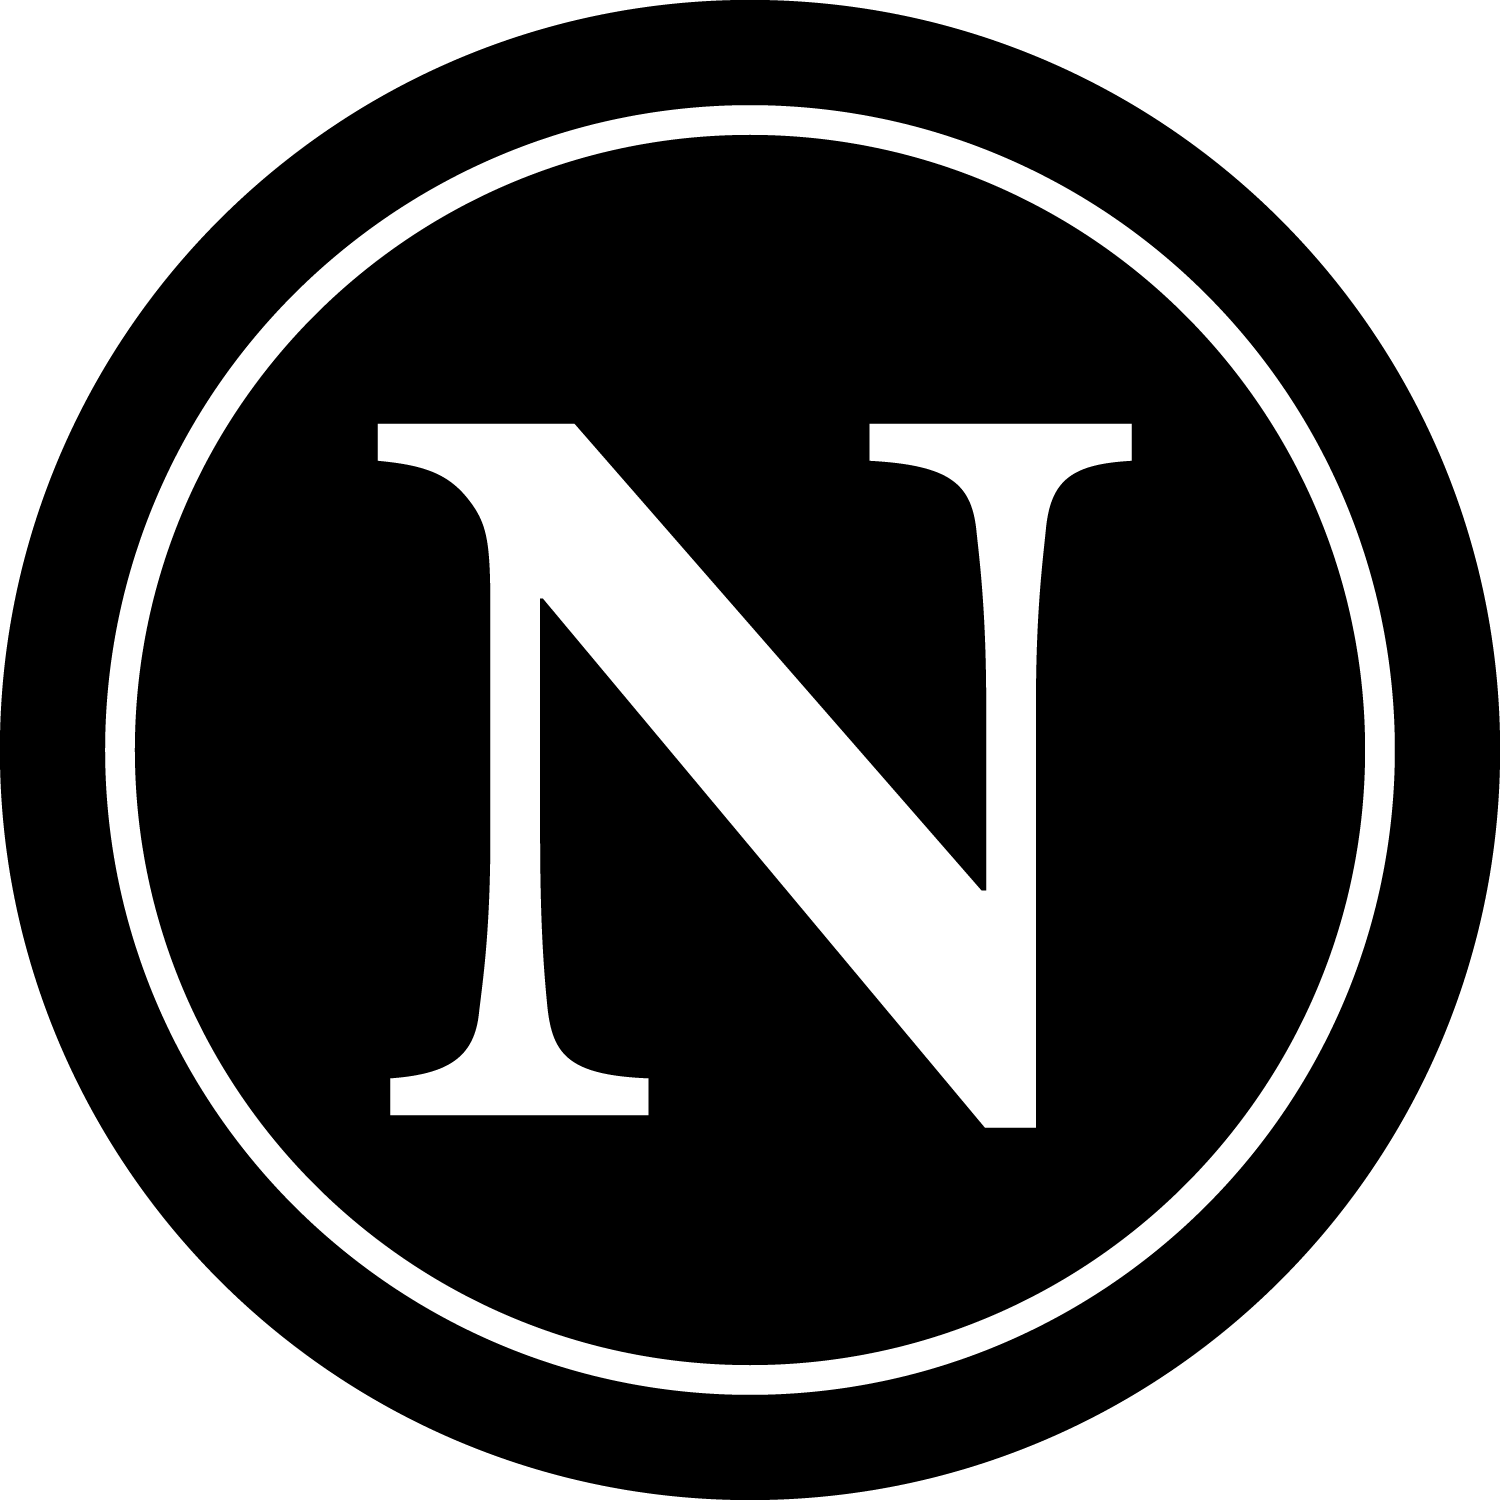 N in Circle Logo - Black And White N Logo Png Image